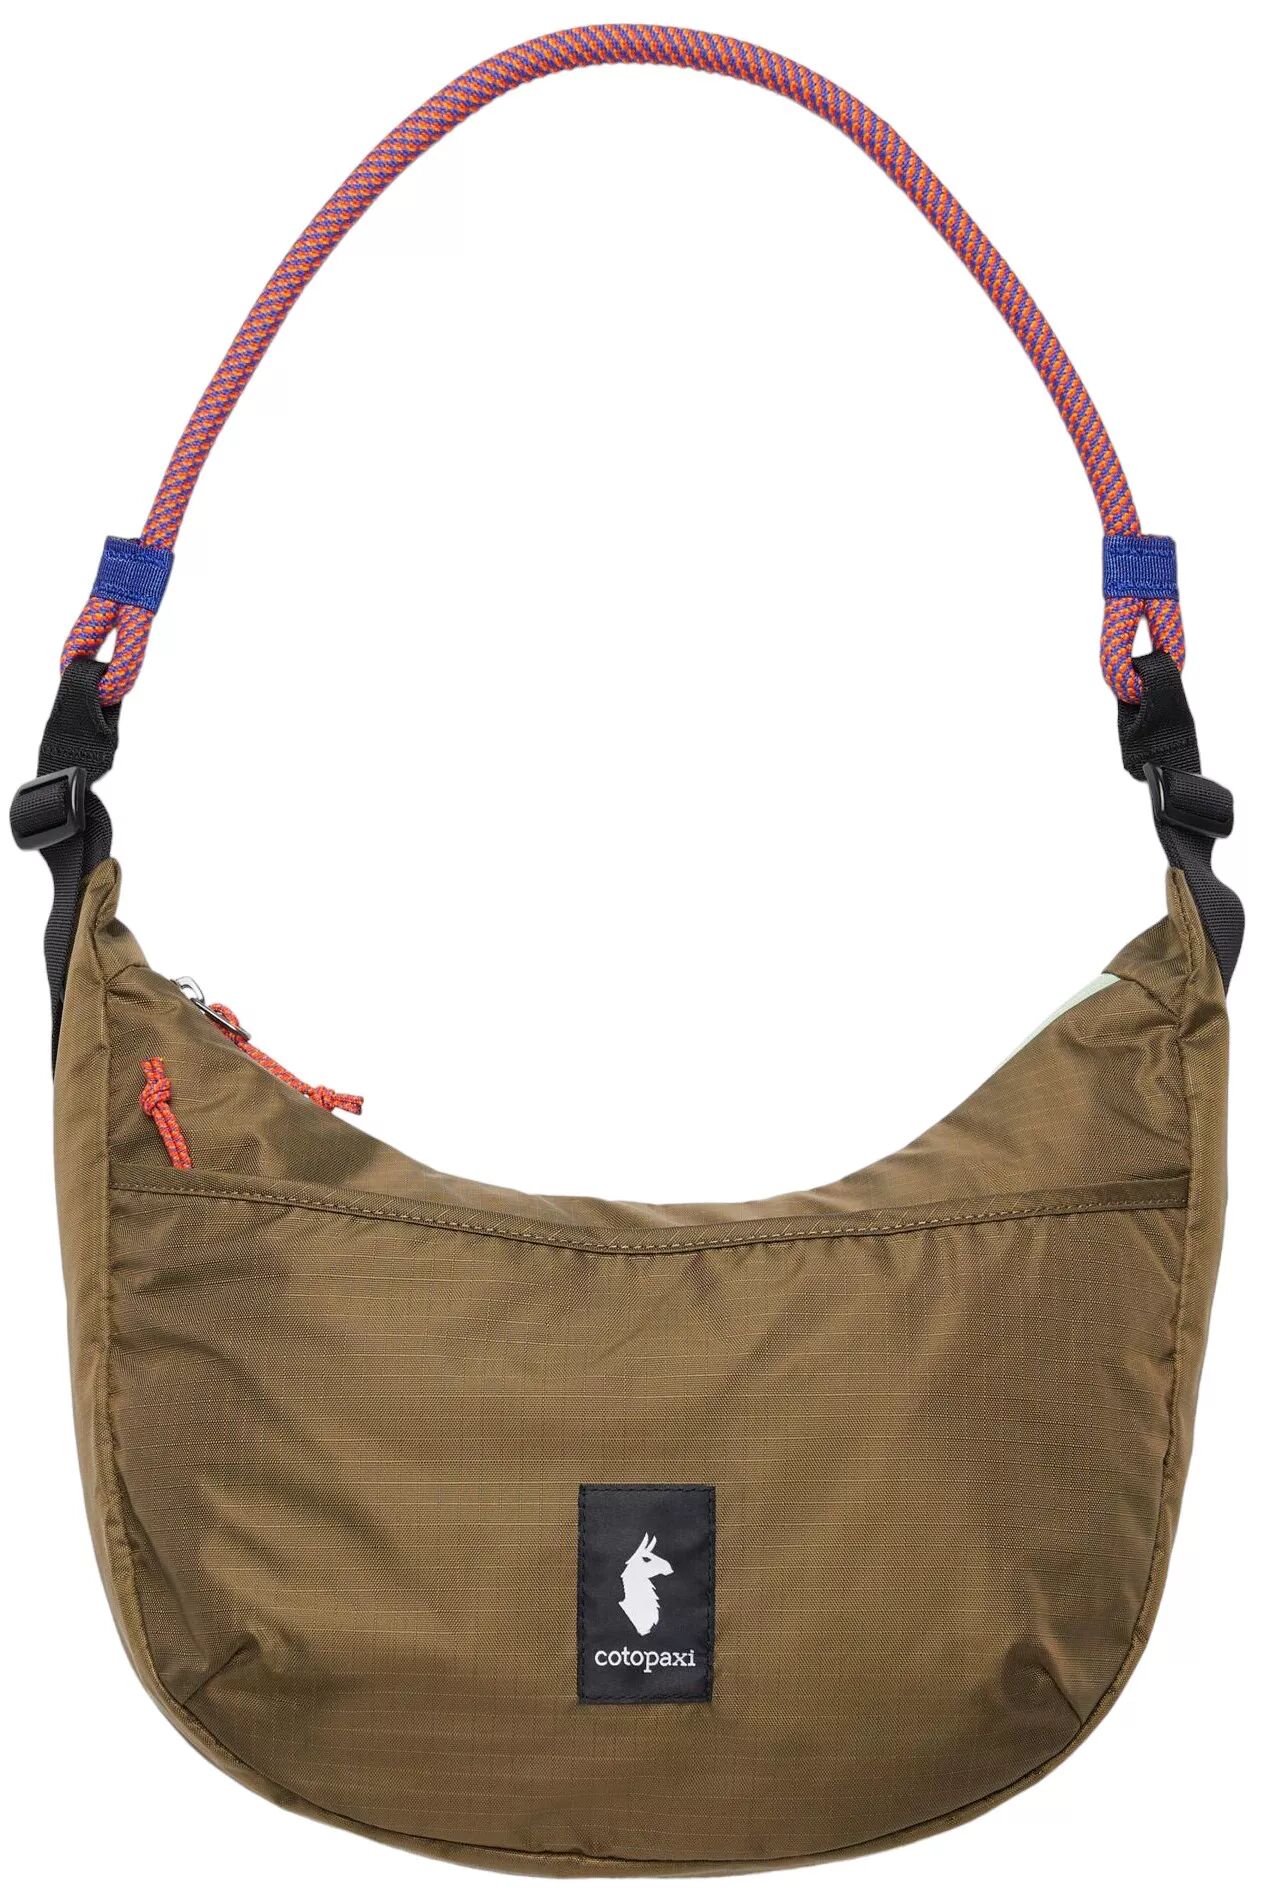 Cotopaxi Trozo 8L Shoulder Bag, Men's